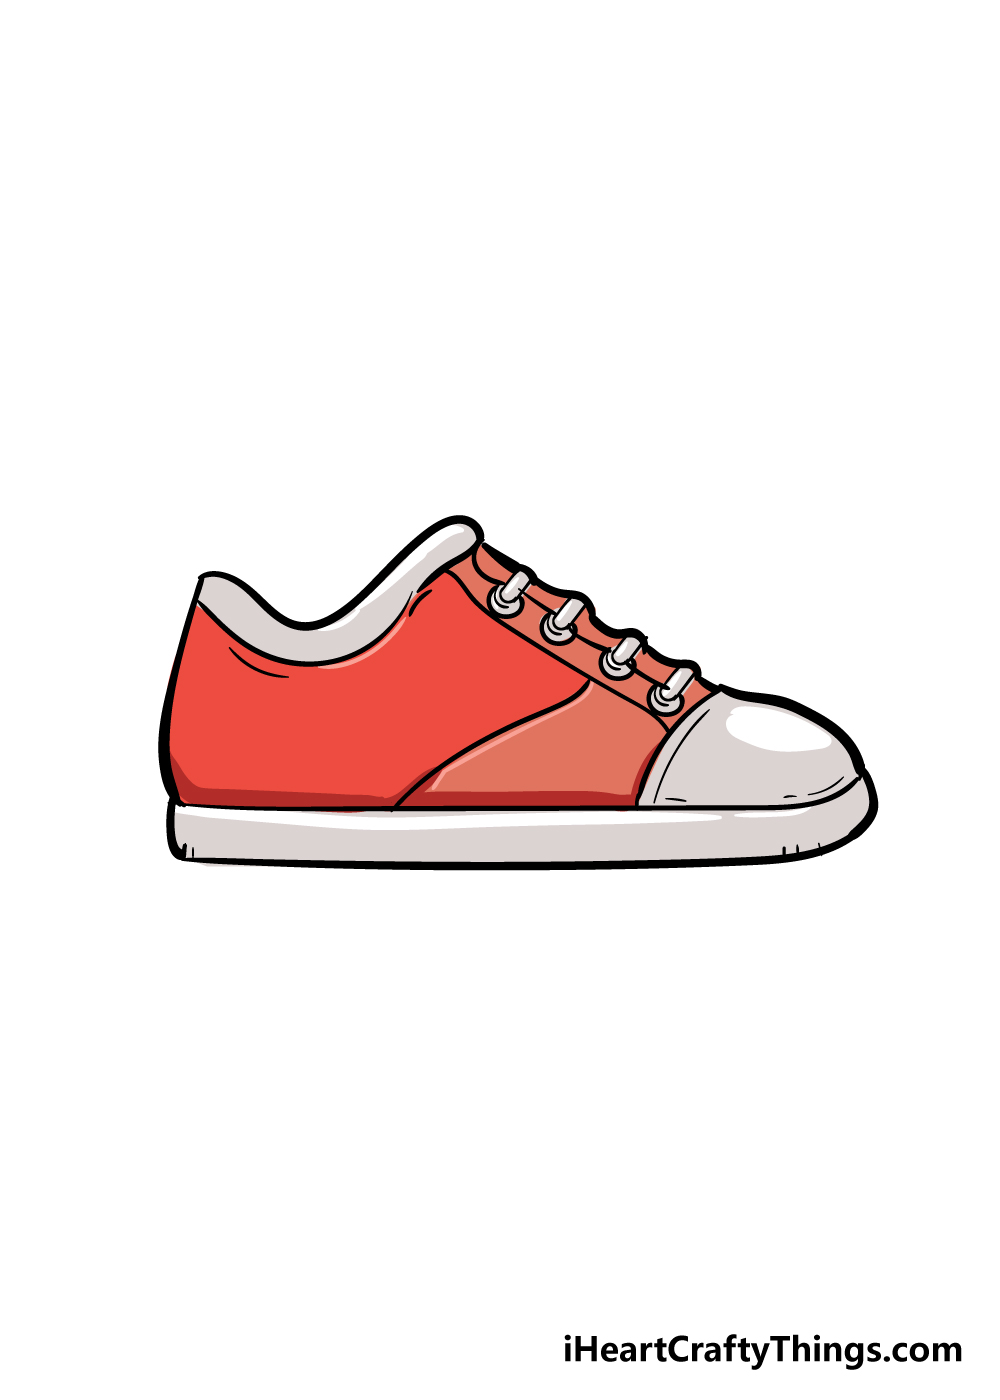 Shoes6 - Hướng dẫn Cách vẽ đôi giày đơn giản với 6 bước cơ bản